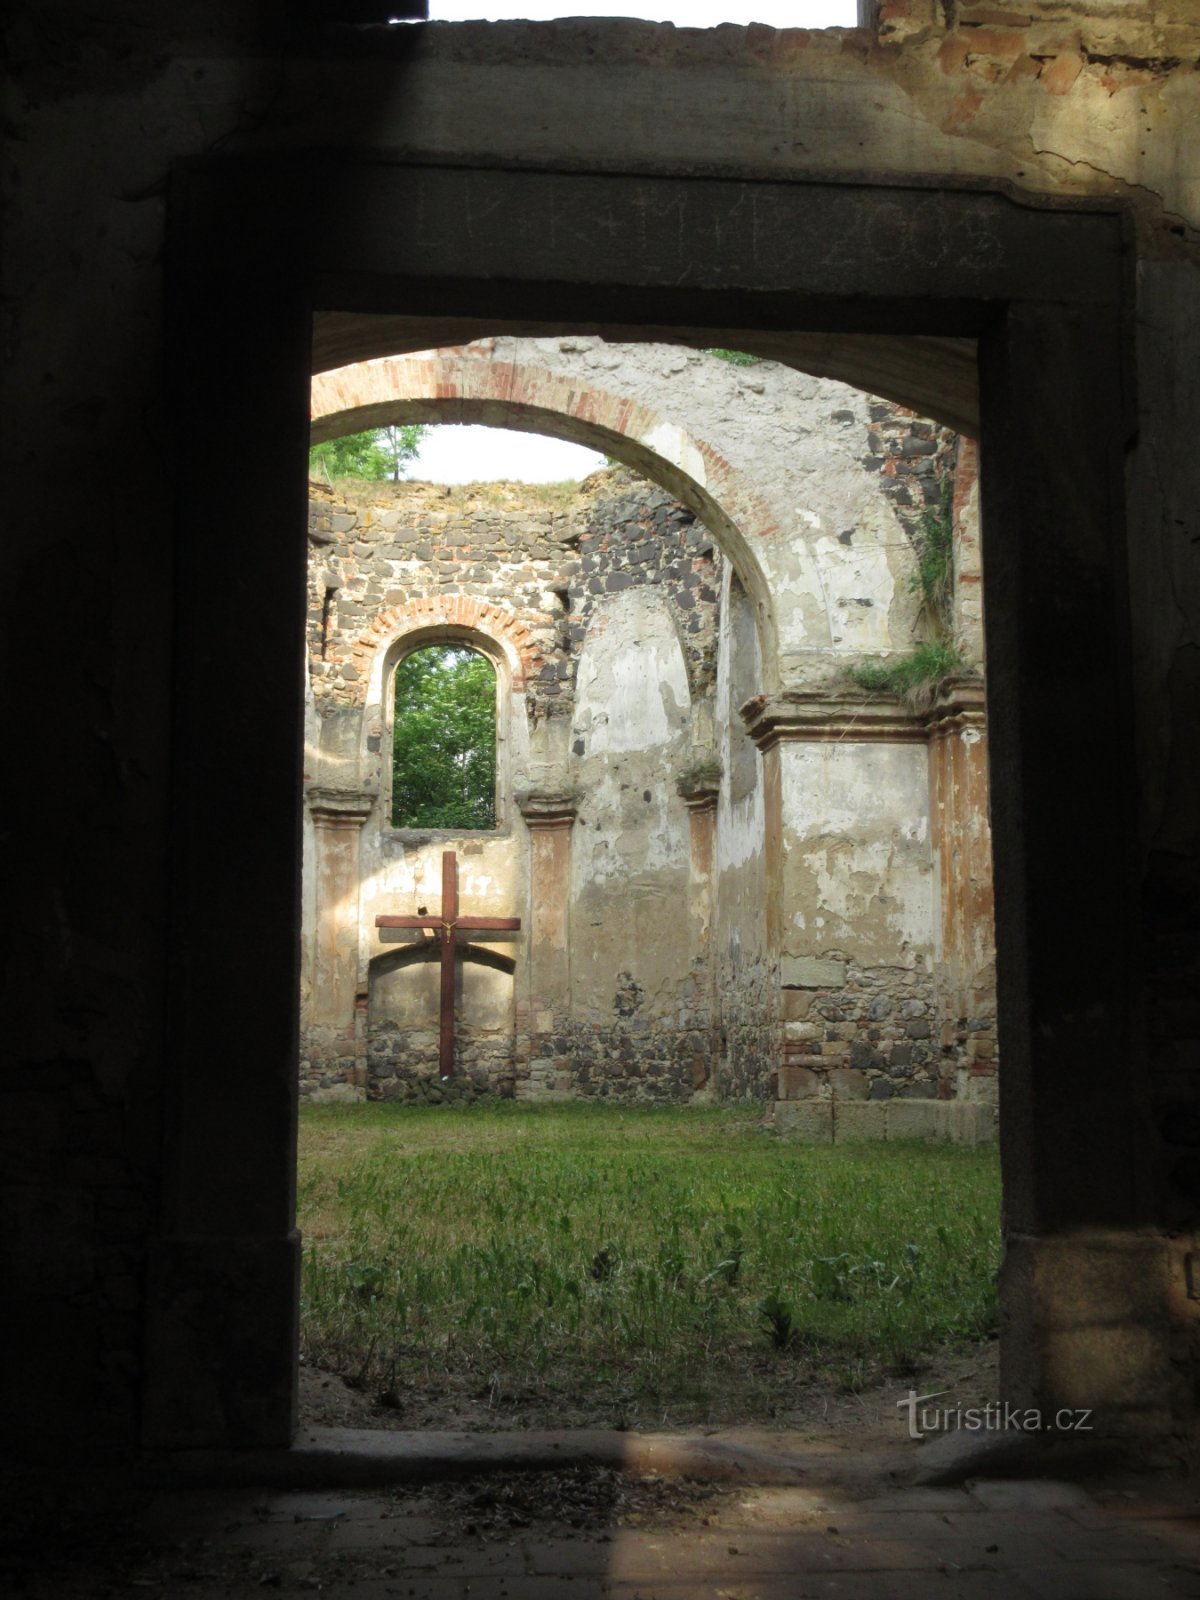 Zlovědice - ruševine crkve sv. Michael